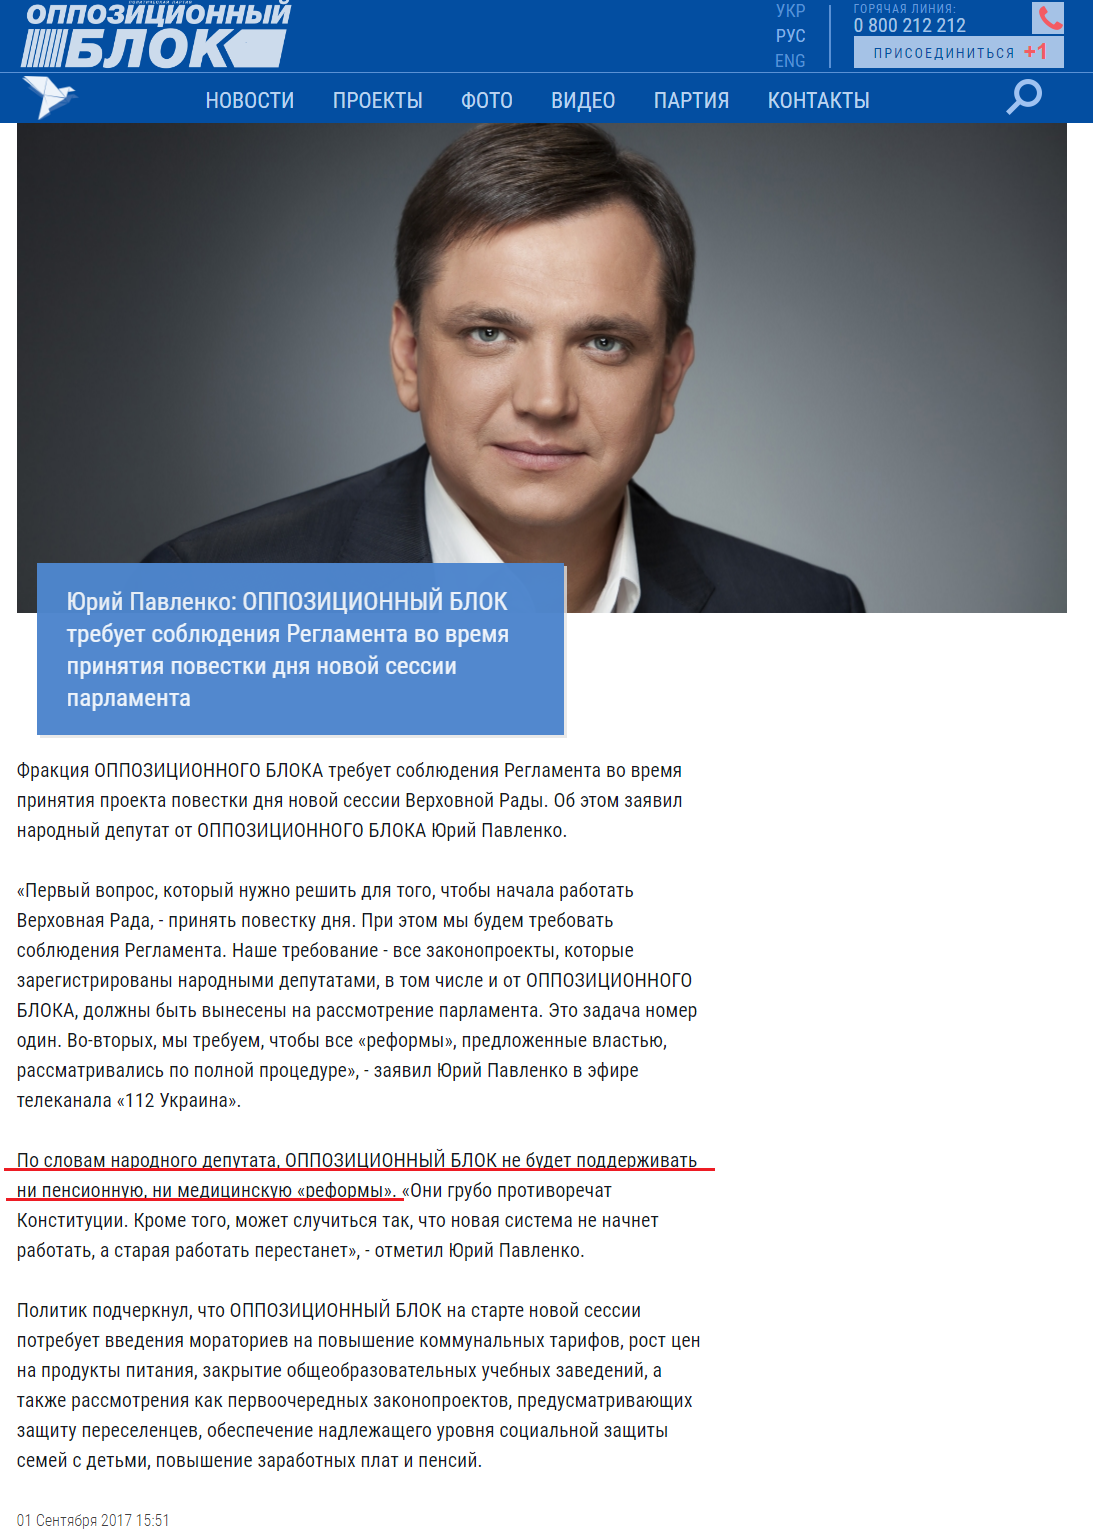 http://opposition.org.ua/news/yurij-pavlenko-opozicjjnijj-blok-vimagae-dotrimannya-reglamentu-pid-chas-ukhvalennya-poryadku-dennogo-novo-sesi.html